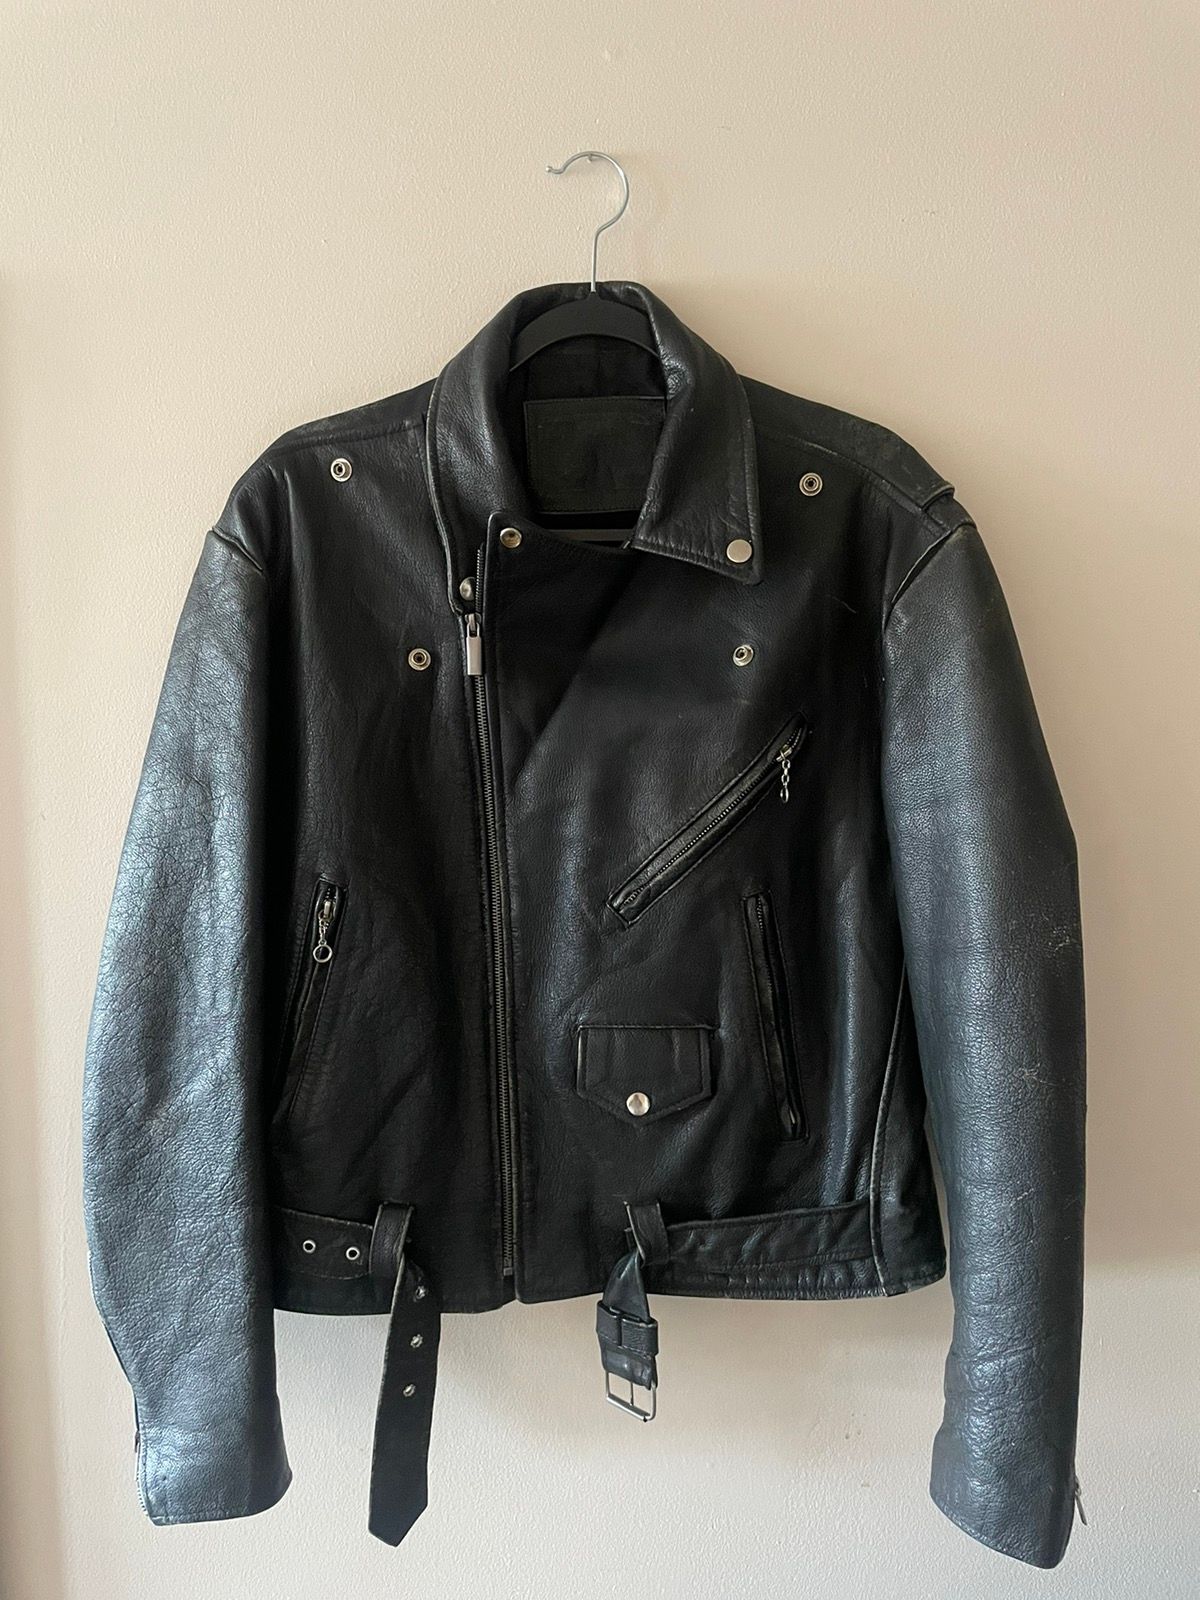 Excelled Vintage Excelled 70s Leather Biker Jacket | Grailed